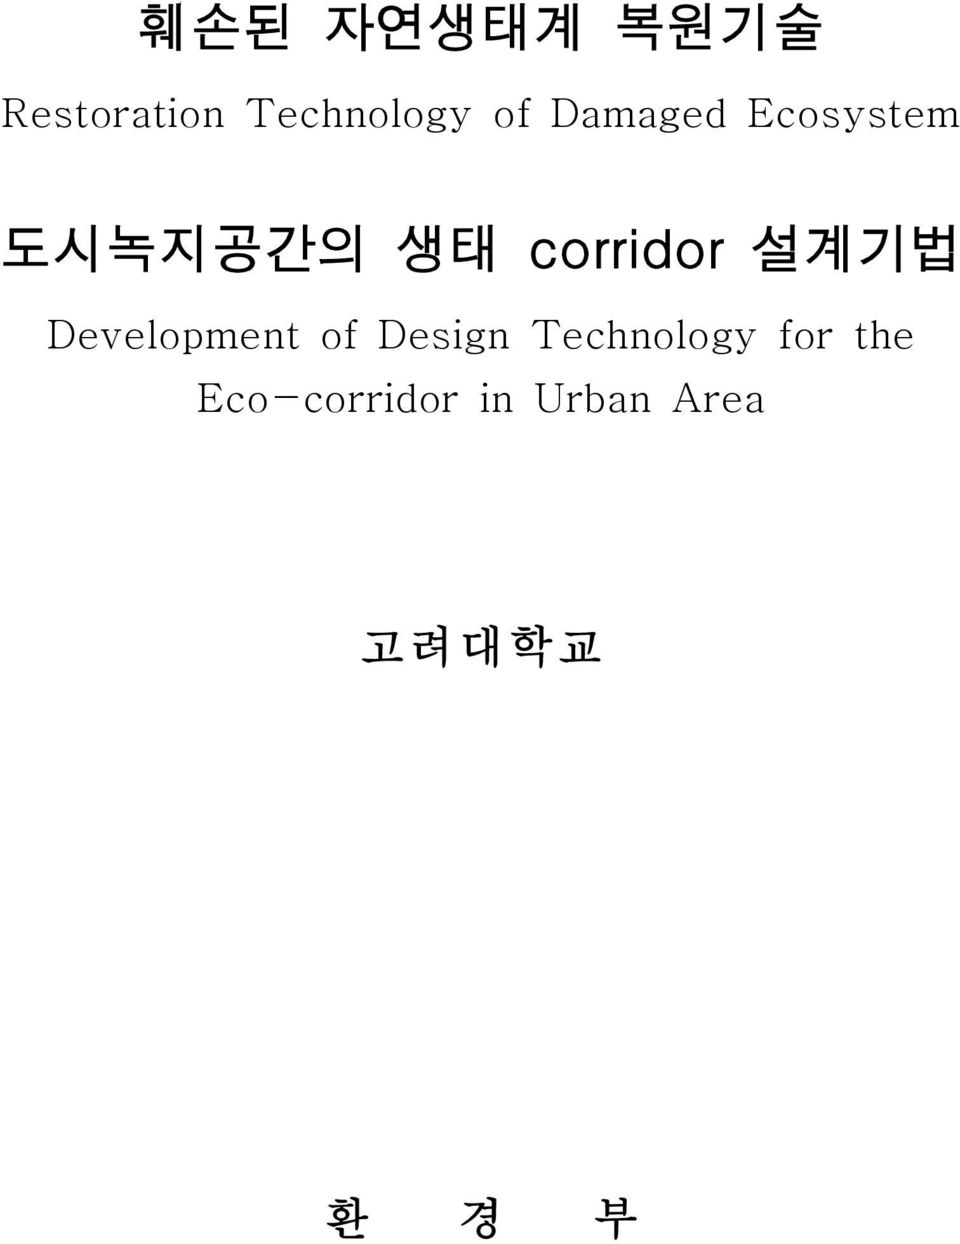 설계기법 Development of Design Technology